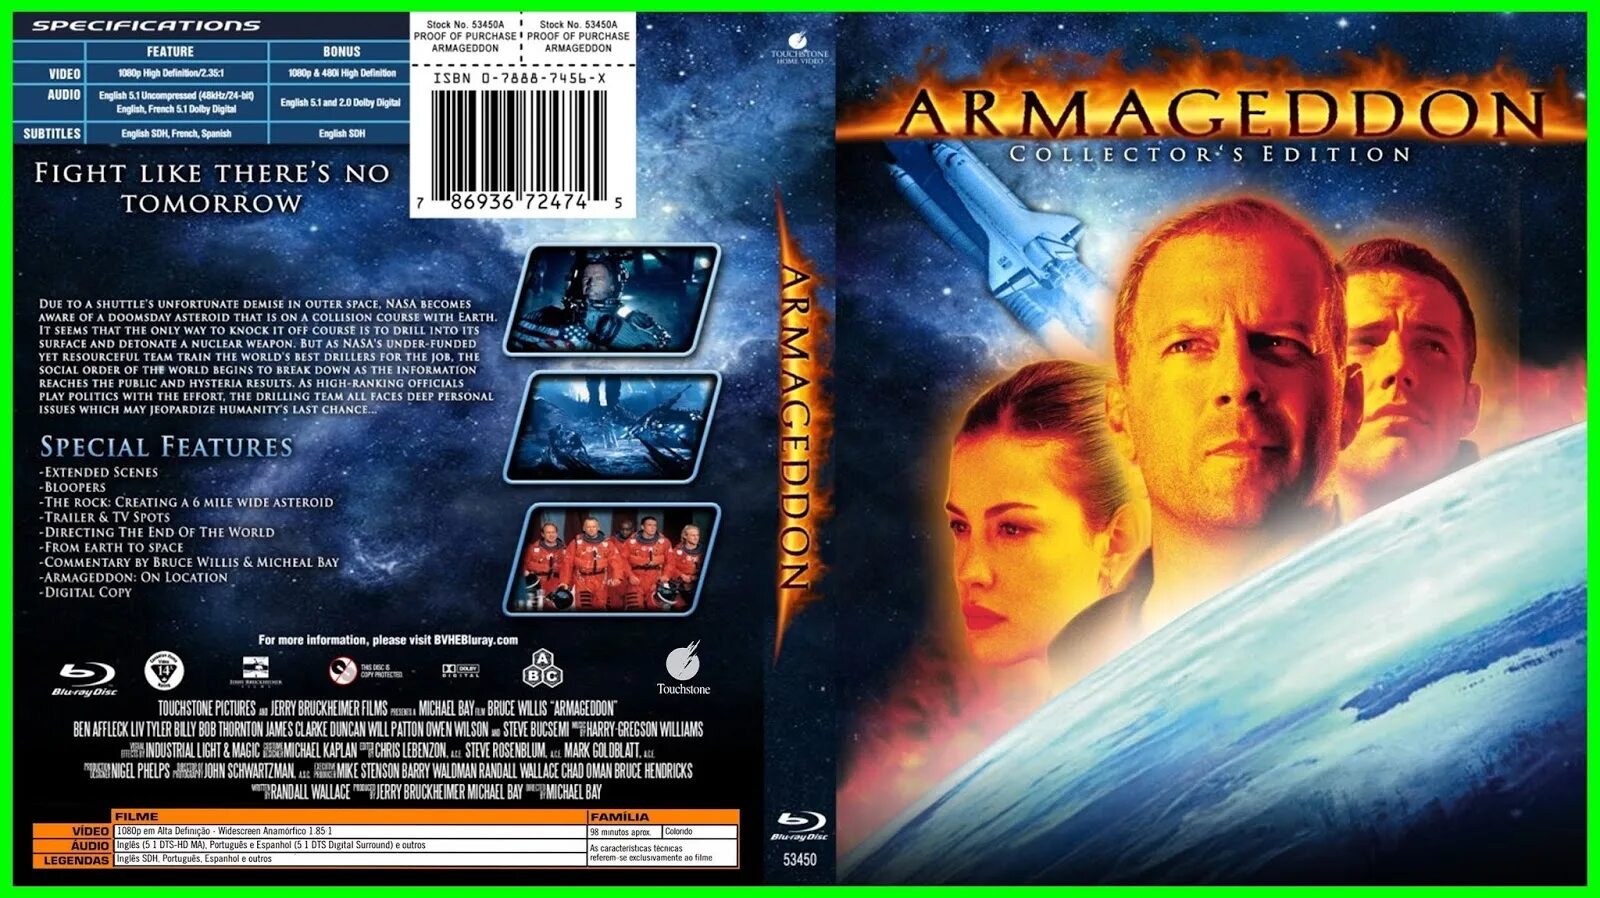 Код армагеддон. Армагеддон 1998. Armageddon 1998 DVD Cover. Cover. Обложка DVD Армагеддон. 1998.